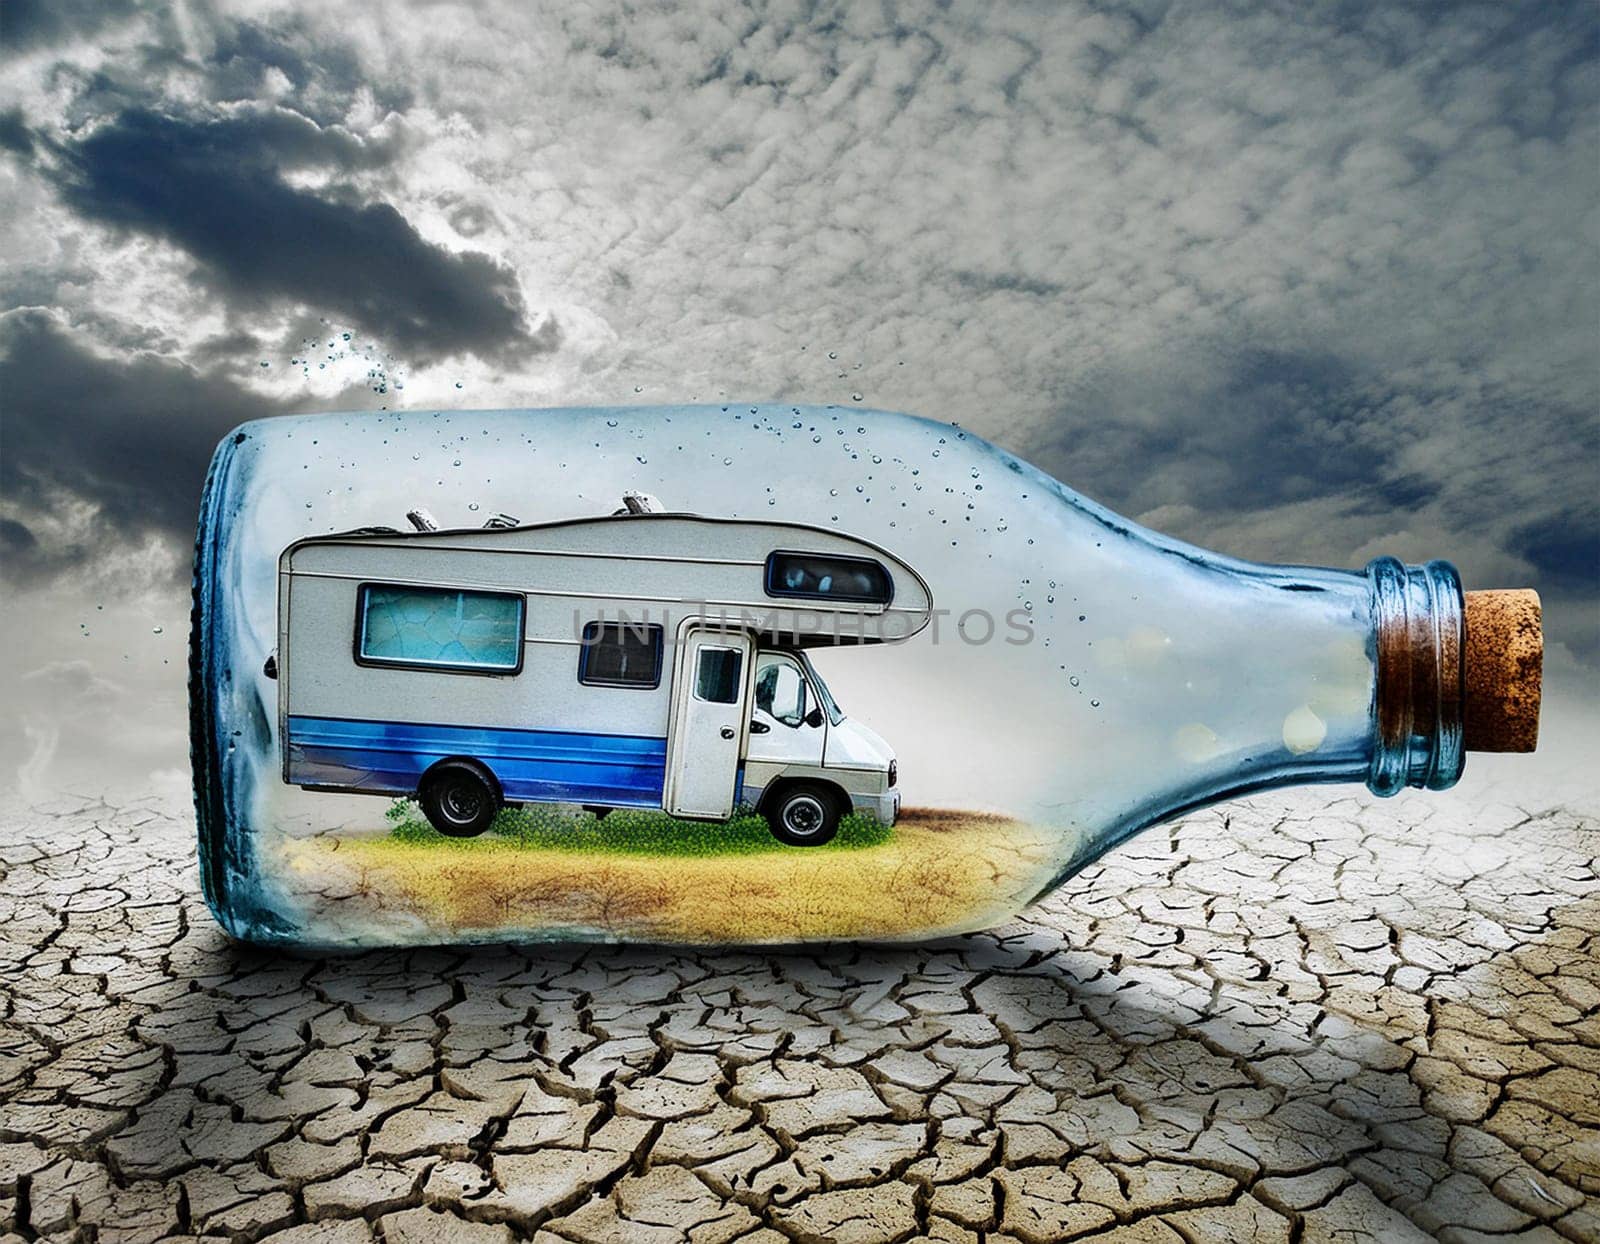 RV camper in a bottle, bottle camper